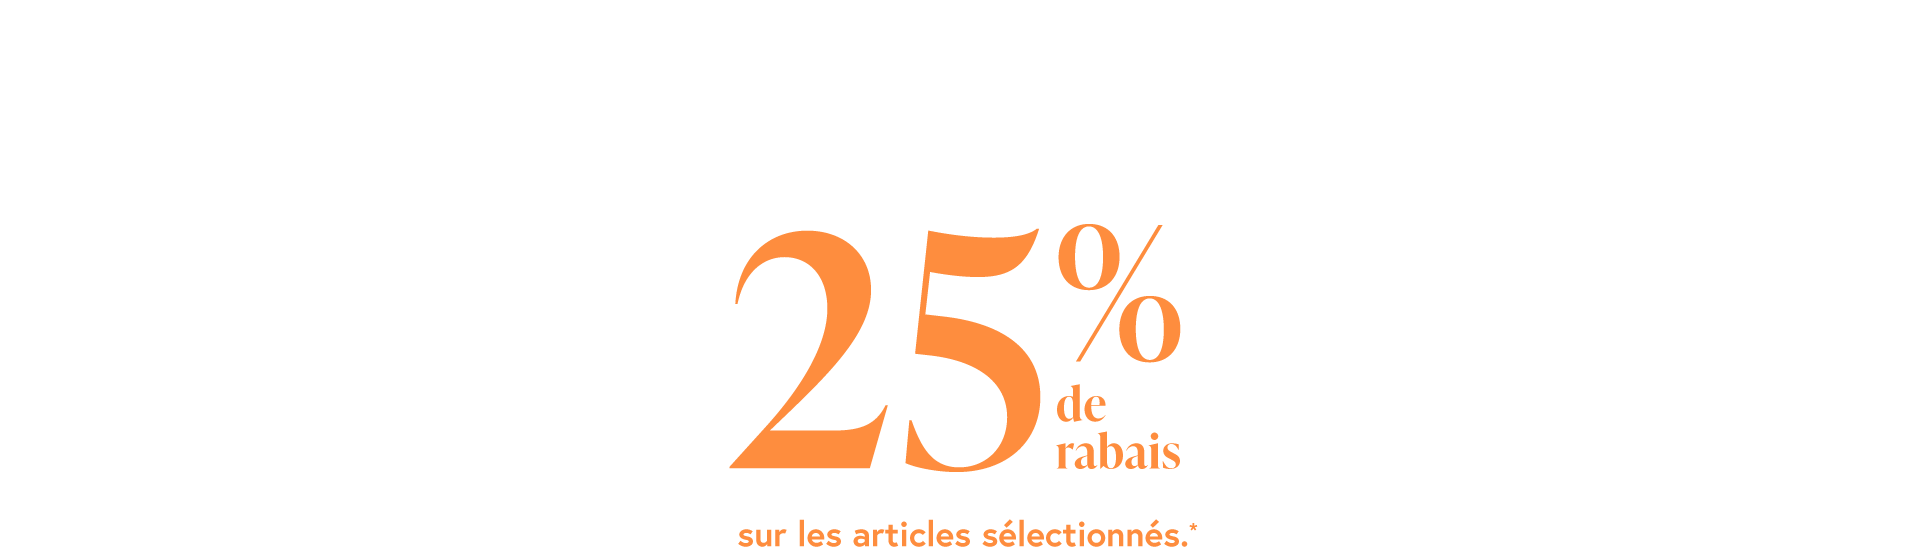 25% de rabais sur les articles sélectionnés